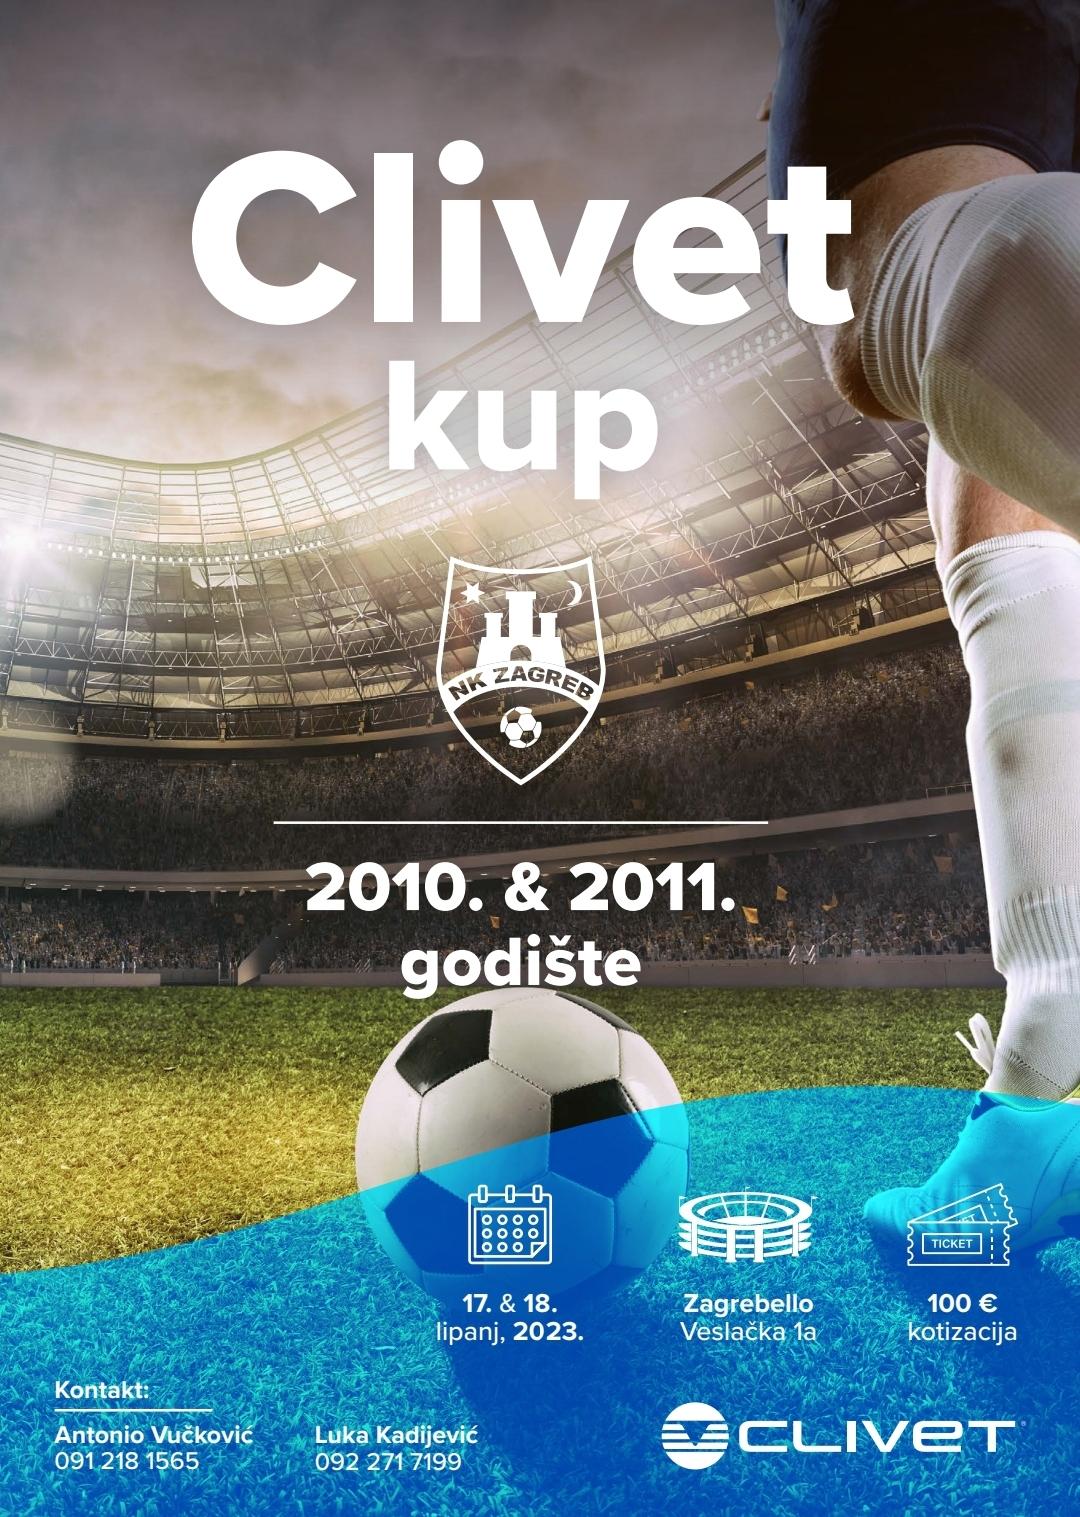 CLIVET CUP